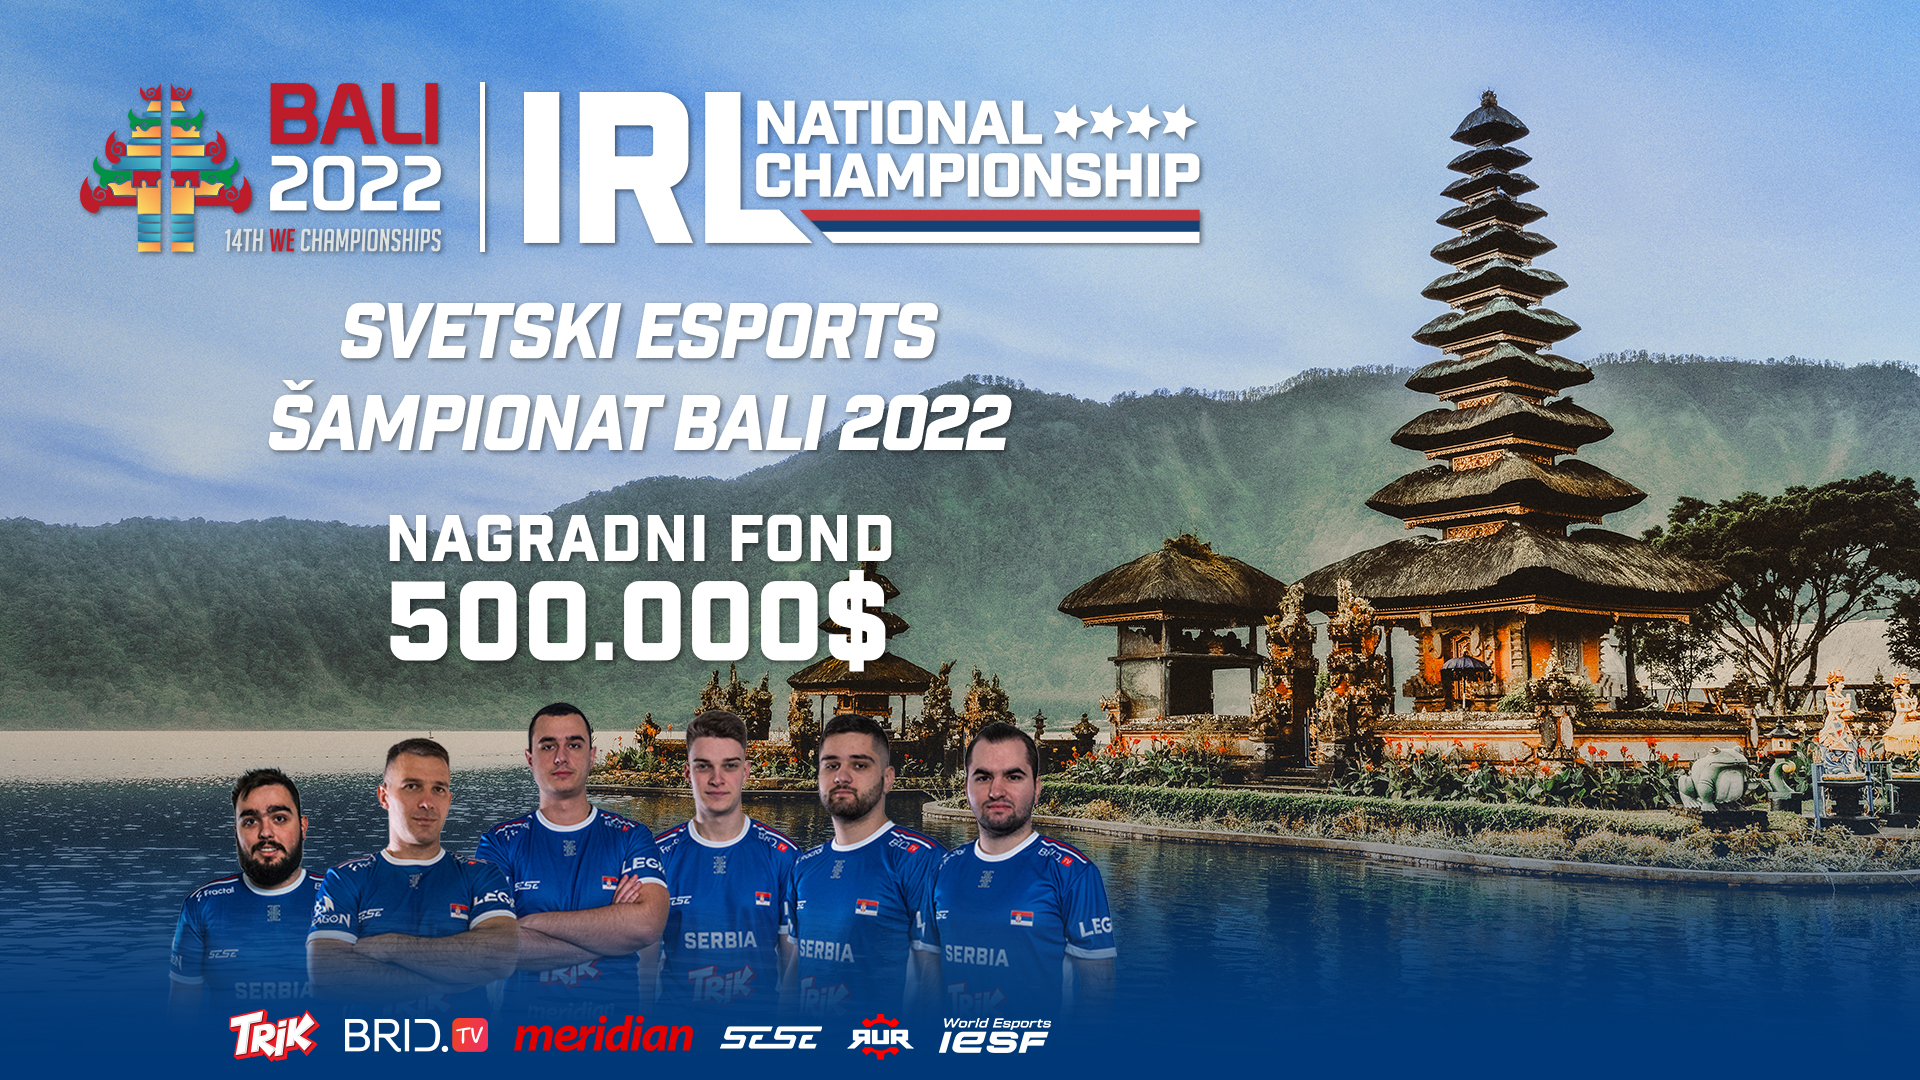 Bali1920-iesf-esports2022